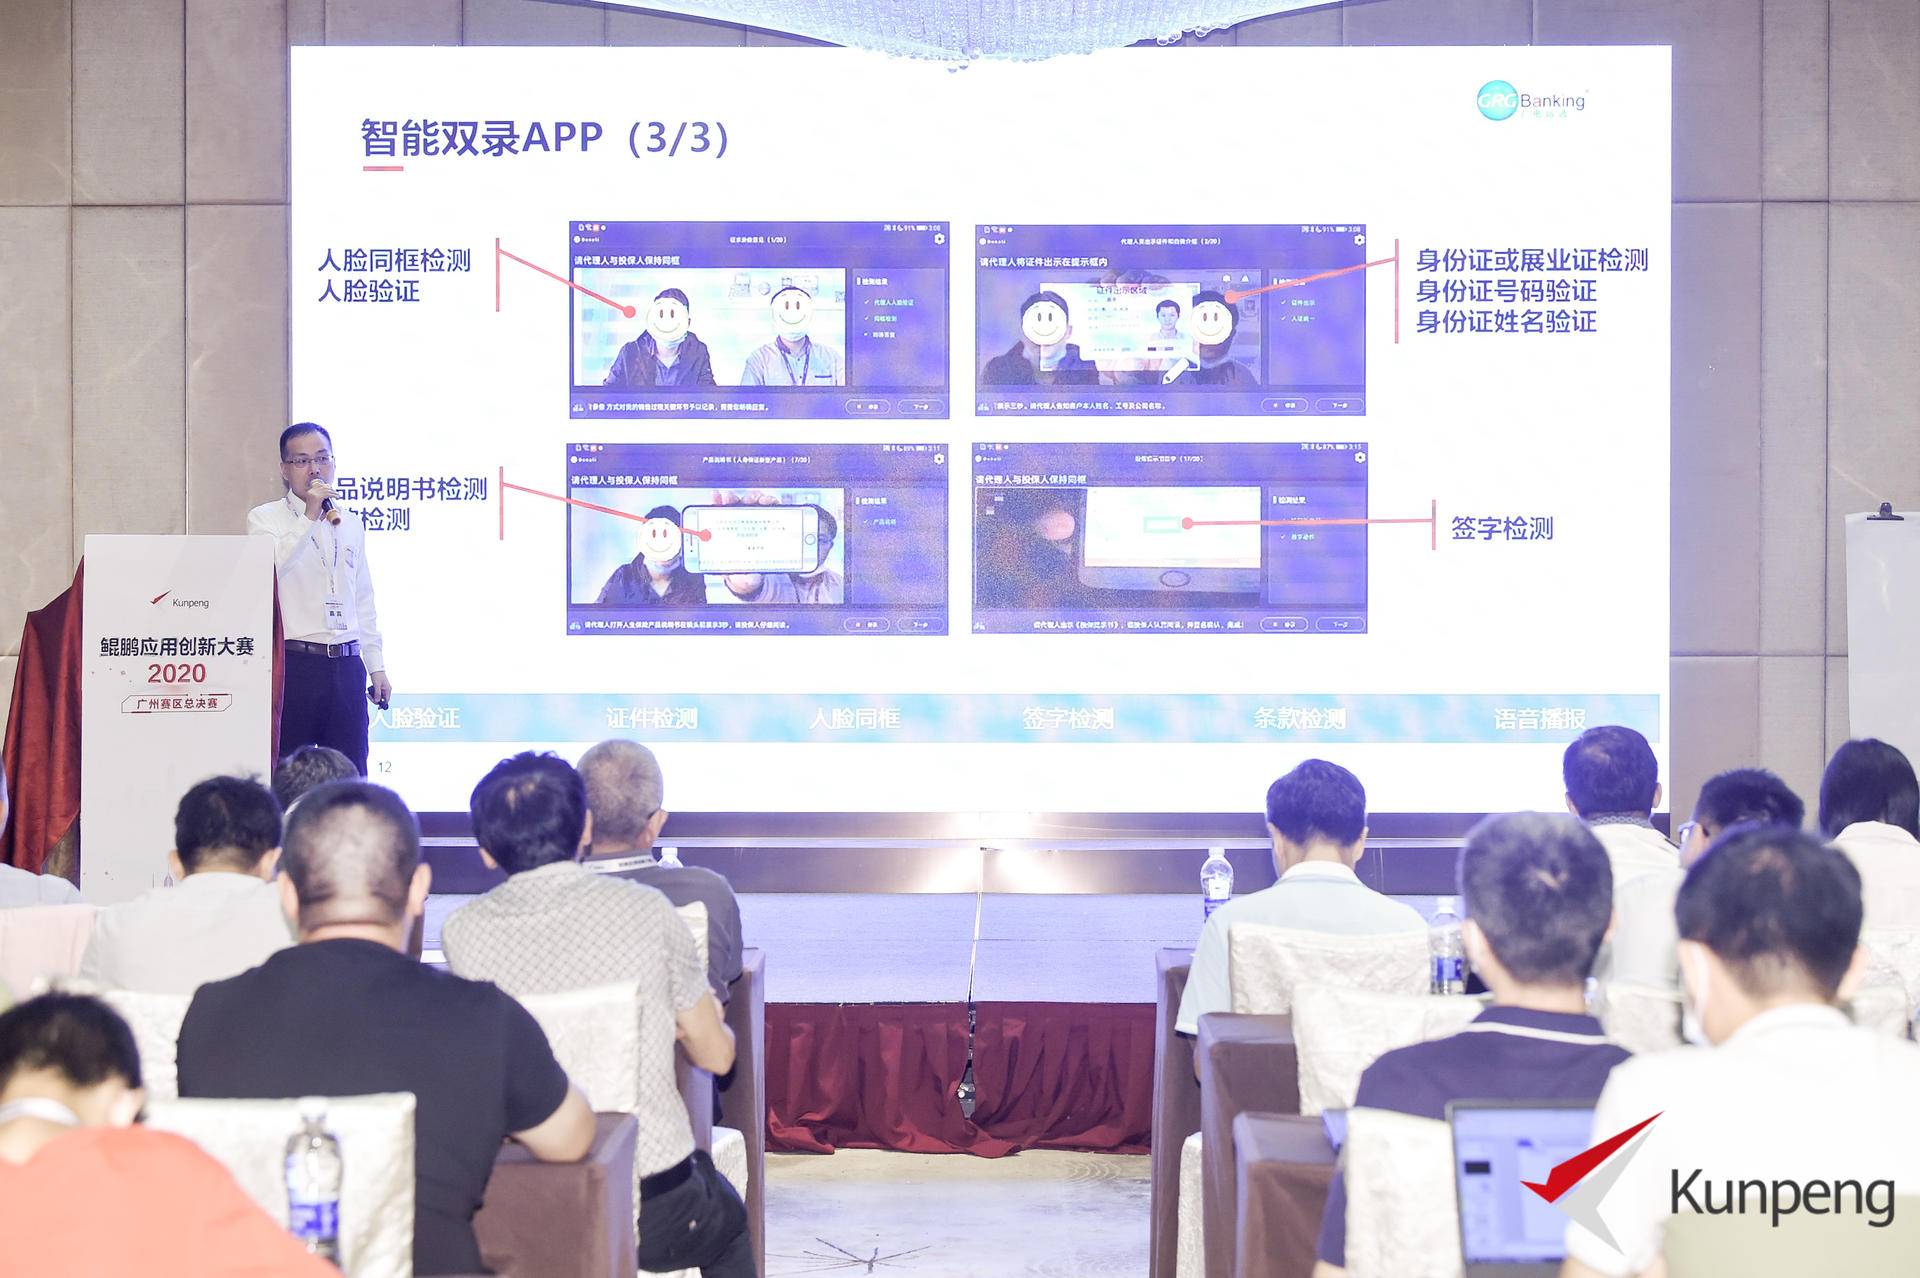 见证开发者的力量“广州鲲鹏创新大赛总决赛”一等奖作品展示